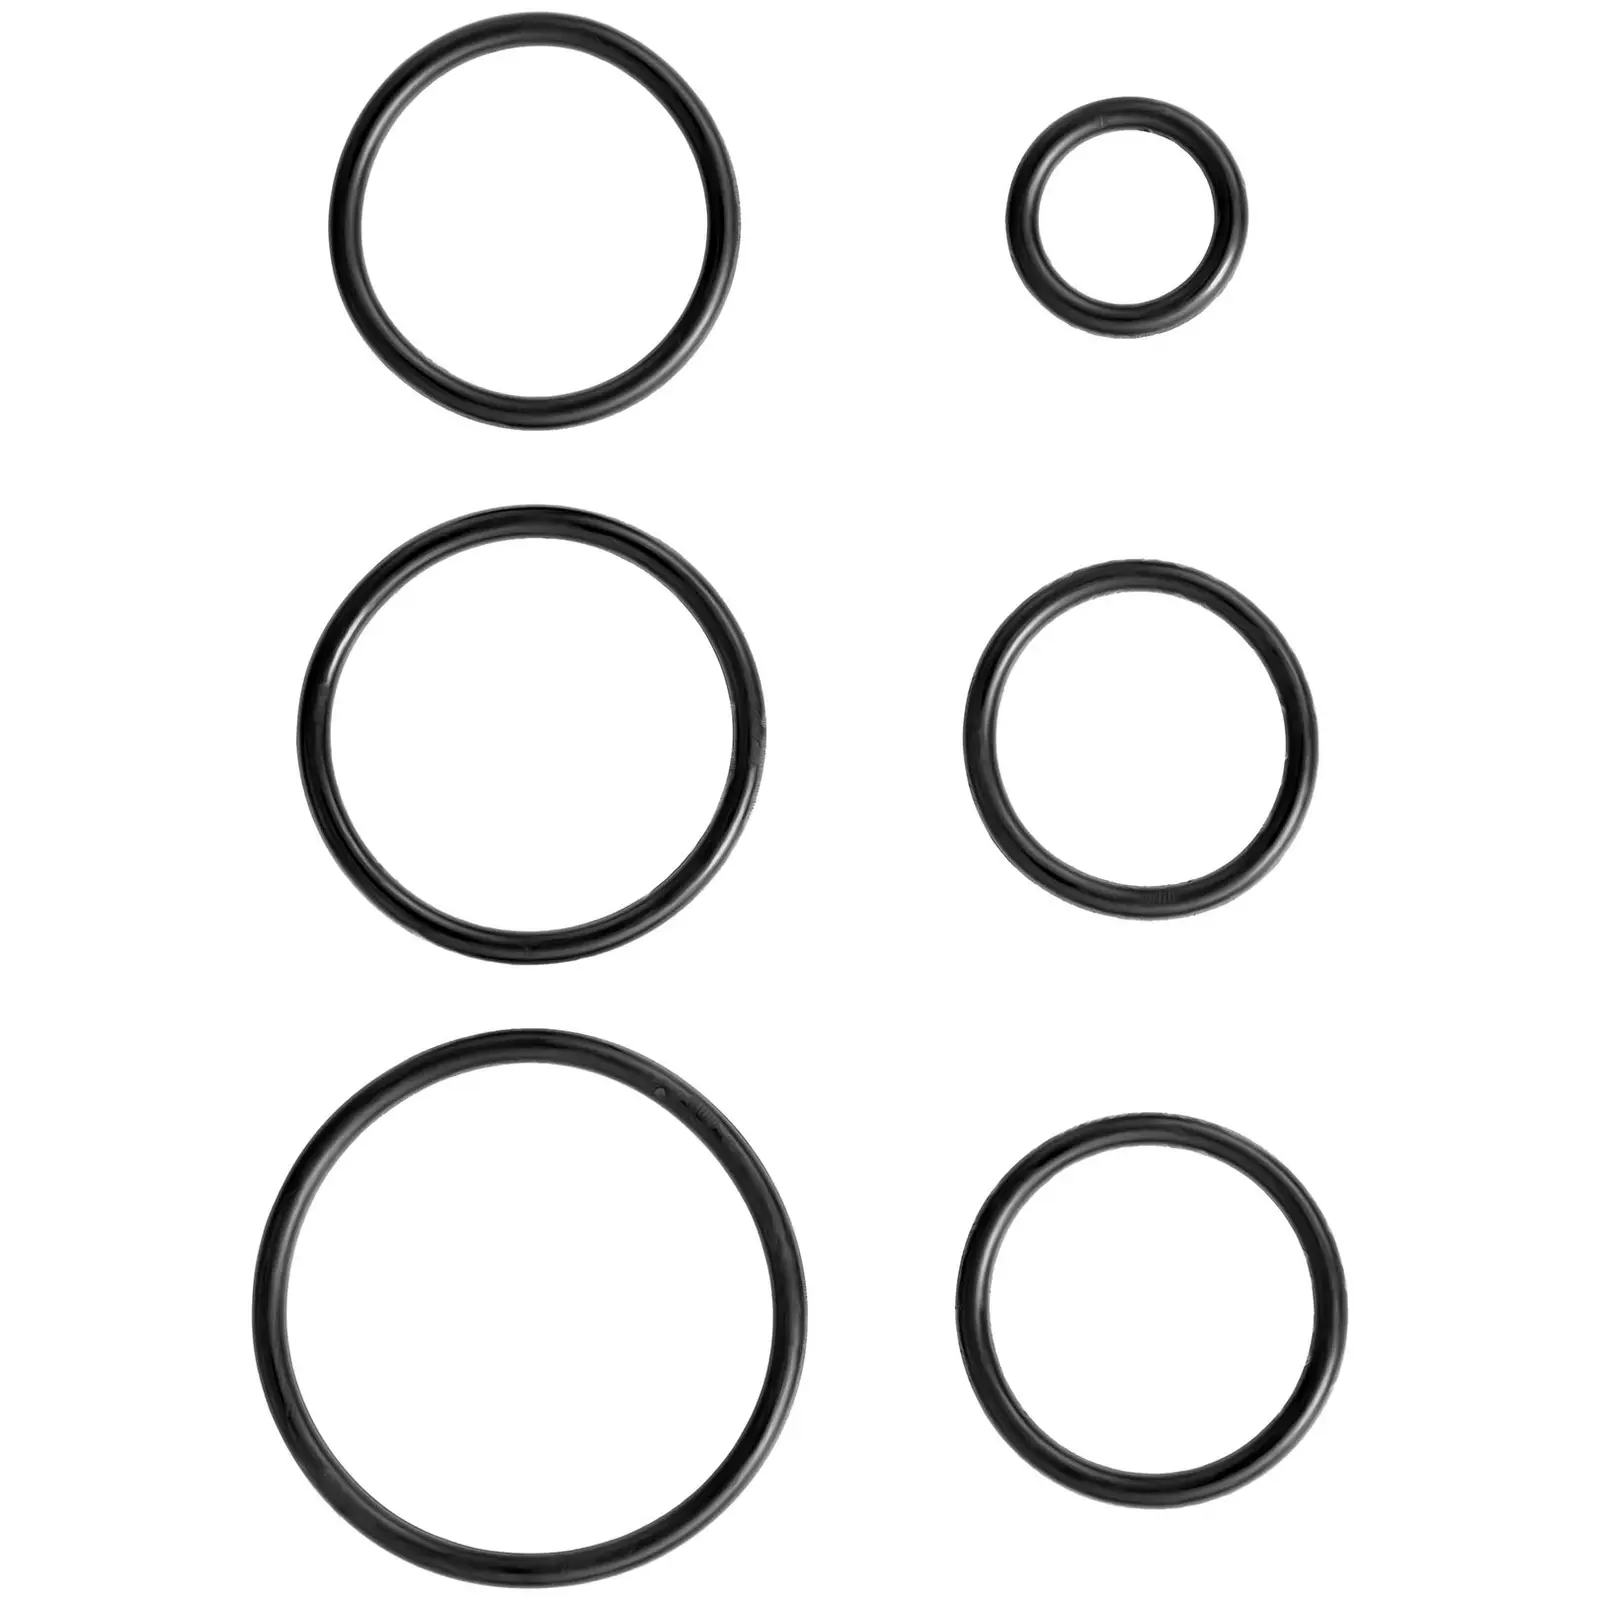 Juntas tóricas - 419 piezas - Ø 3,0 - 50,0 mm (interior) / 6,0 - 57,0 mm (cordón)